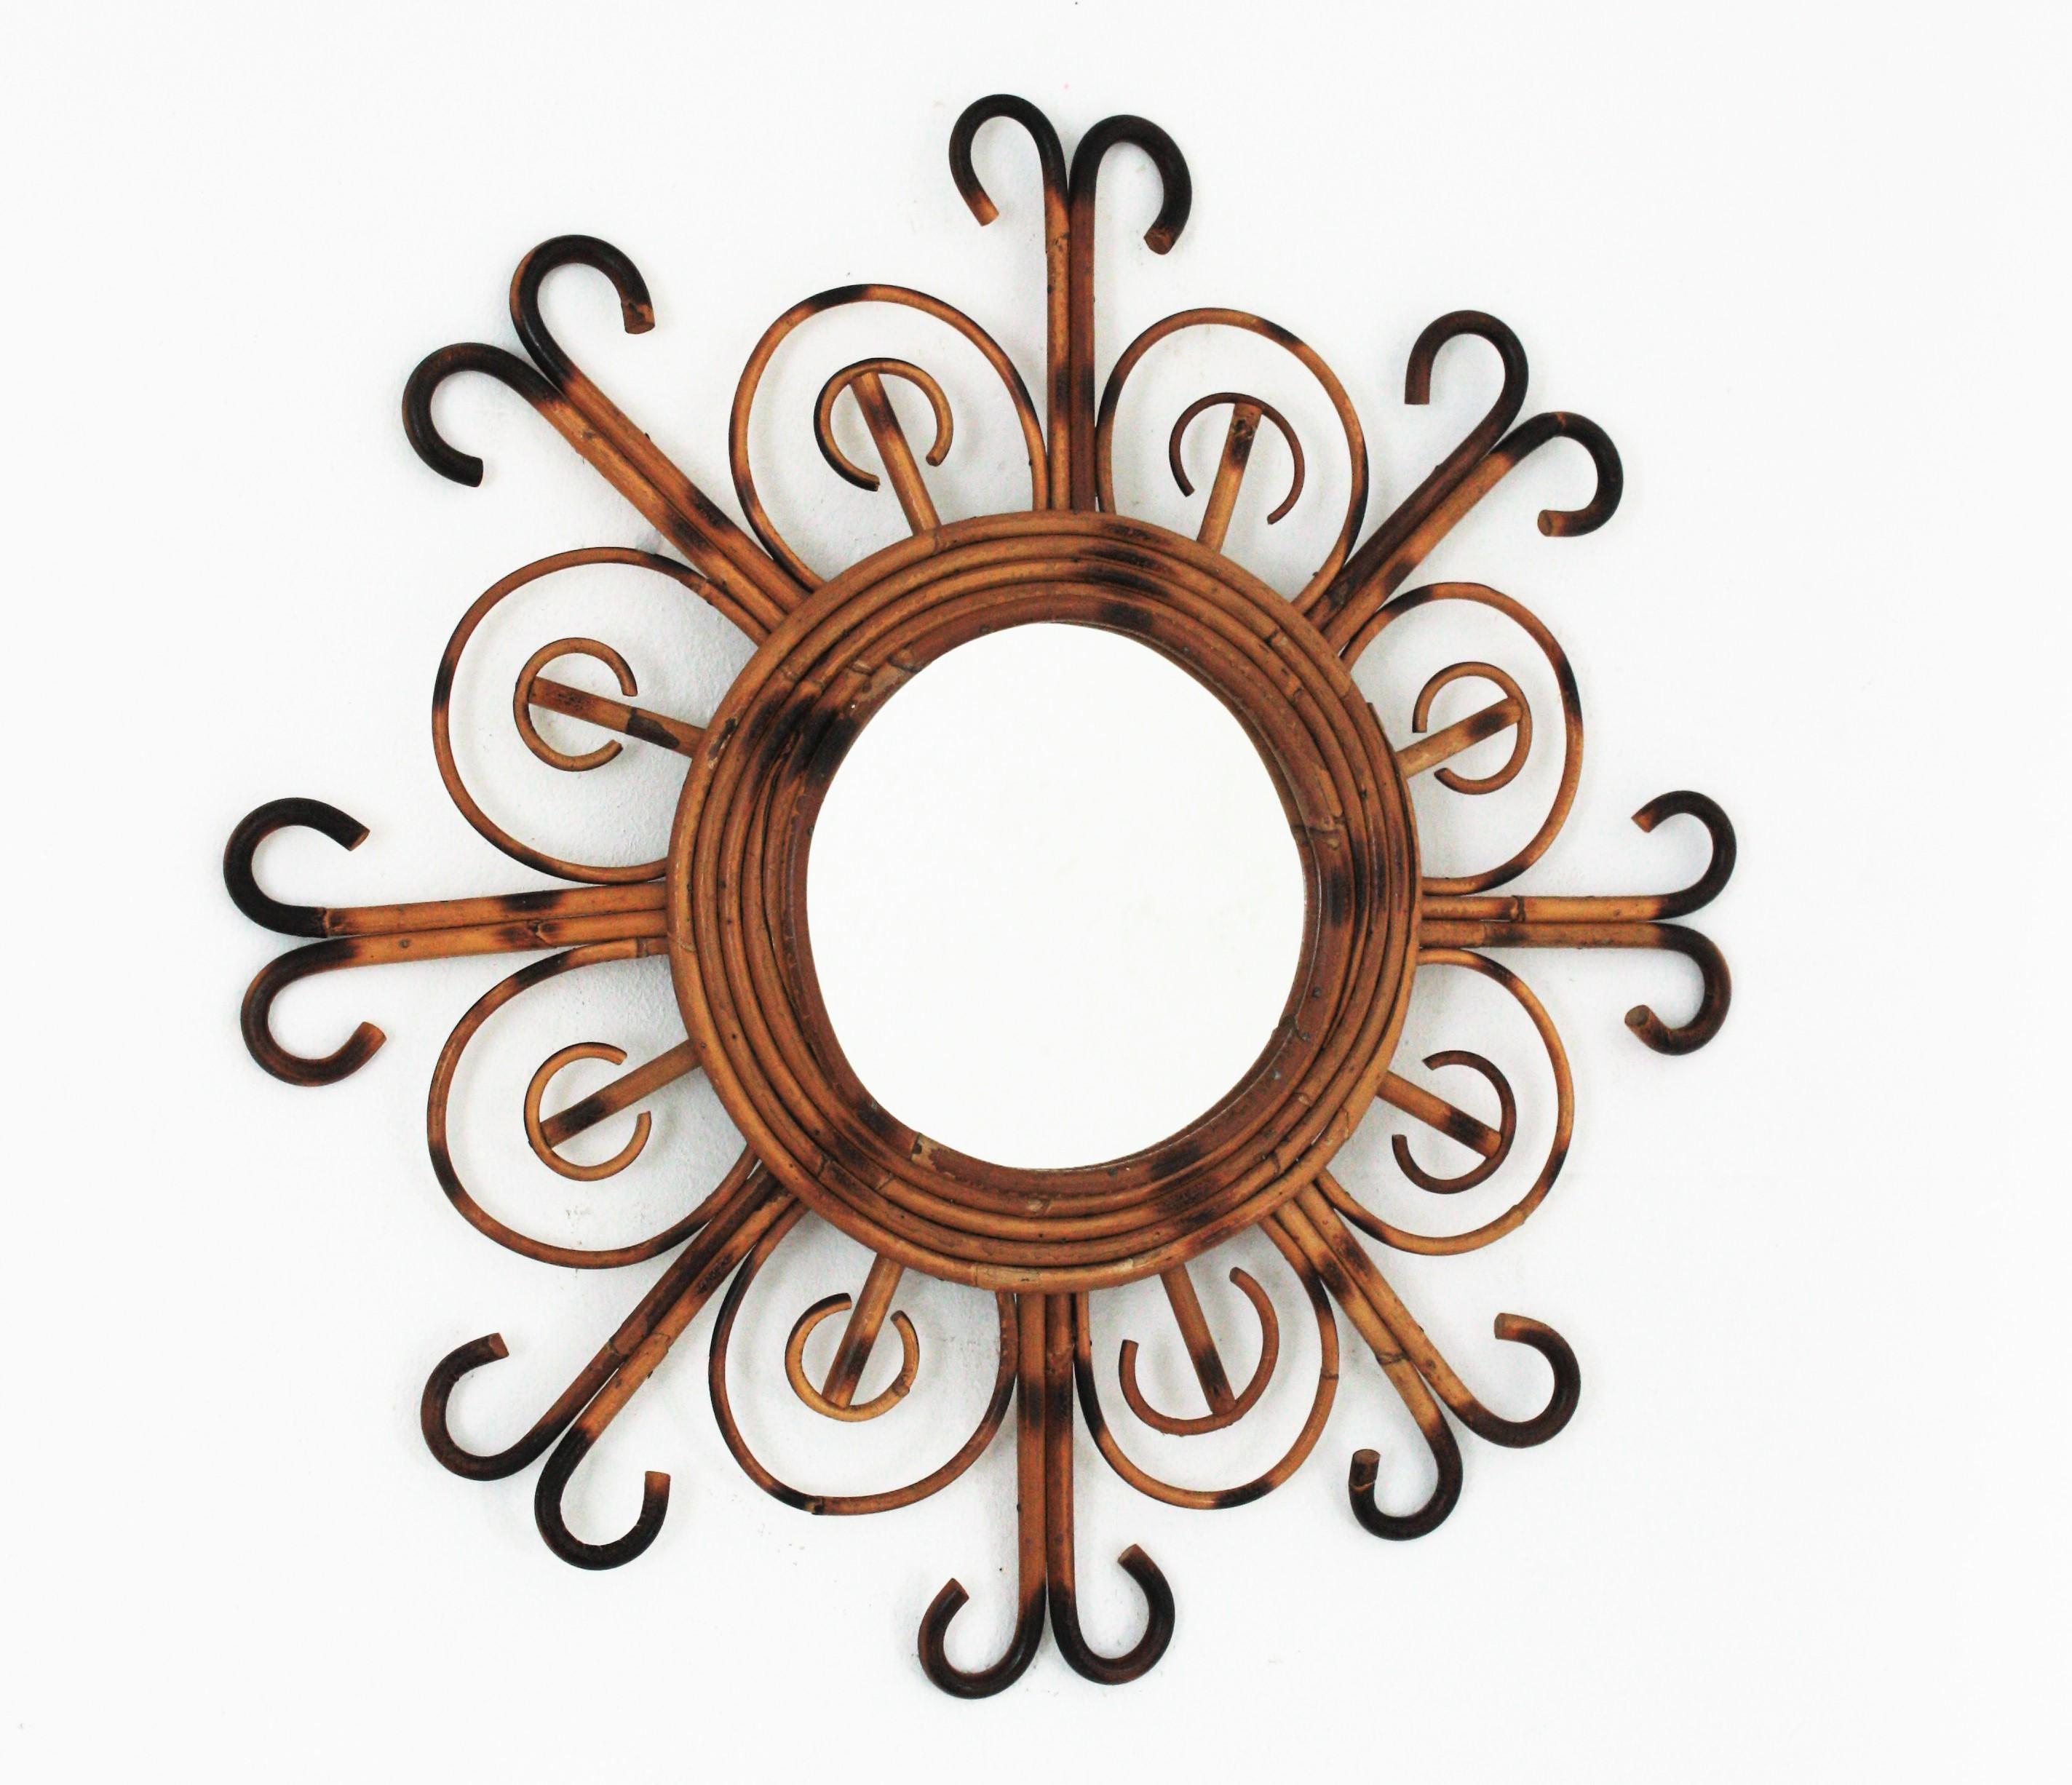 Auffälliger Spiegel in Form einer Blume / Sonnenschliff aus Rattan mit Pyrographie-Details. Hergestellt in Frankreich in den 1950er Jahren. 
Dieser Wandspiegel hat einen Rattanrahmen aus Rattanblättern, die sich mit geschwungenen Strahlen am Ende